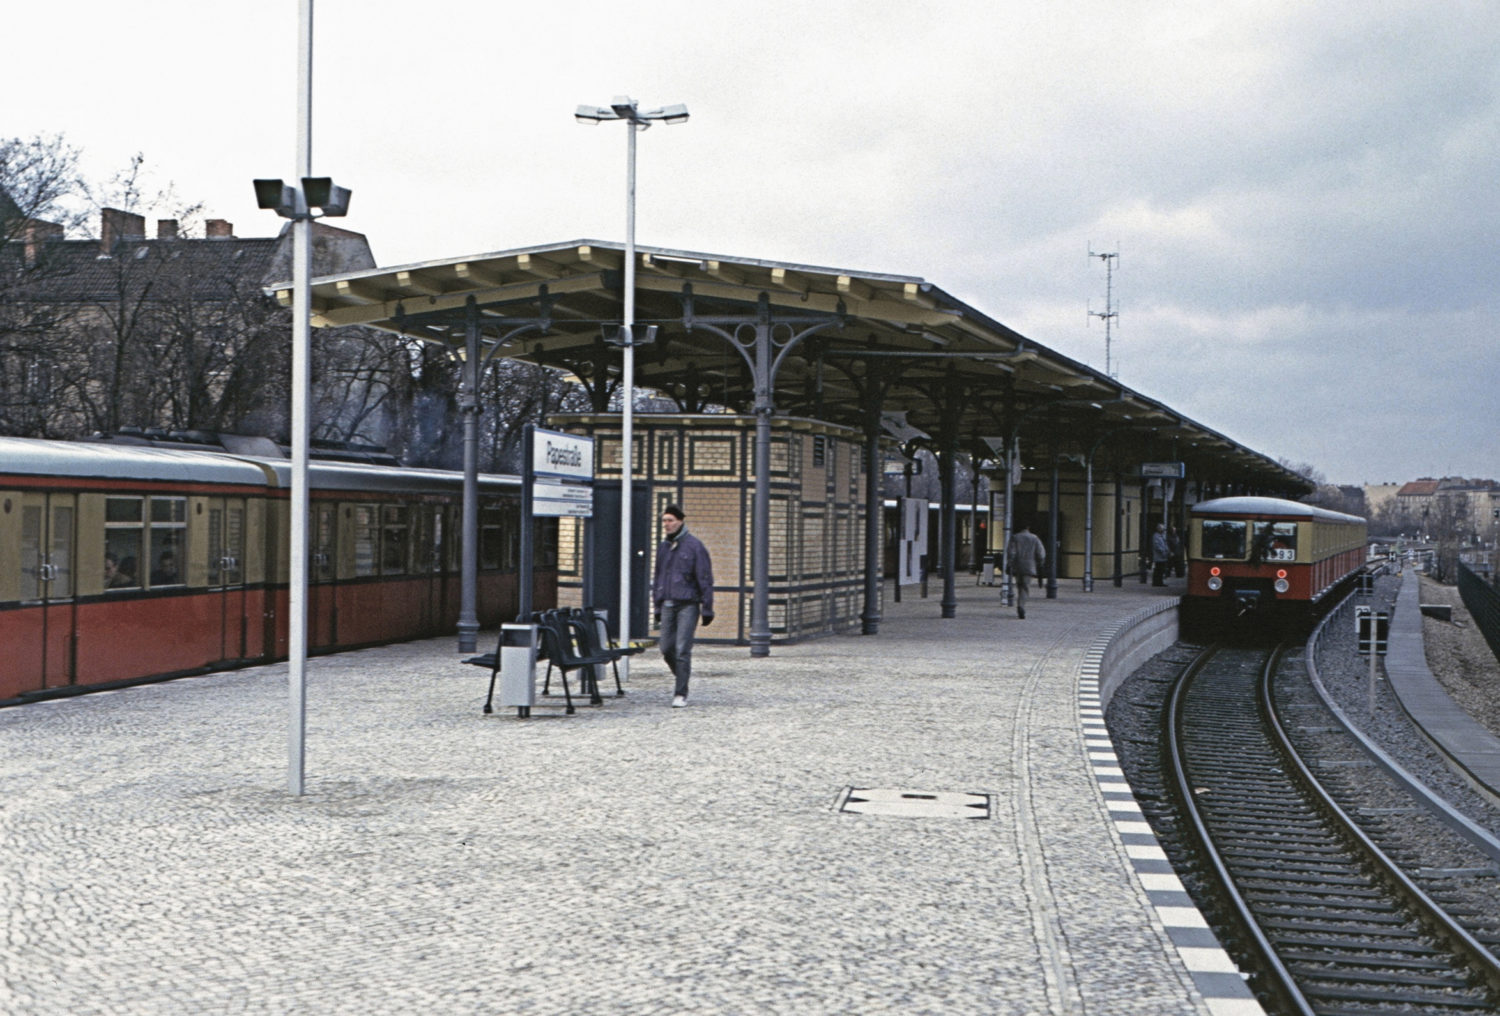 Bilder aus einer anderen Zeit: Wo heute das Südkreuz ist, war früher ein Bahnhof wie jeder andere. Foto: Wikimedia Commons/Roehrensee/CC BY-SA 3.0